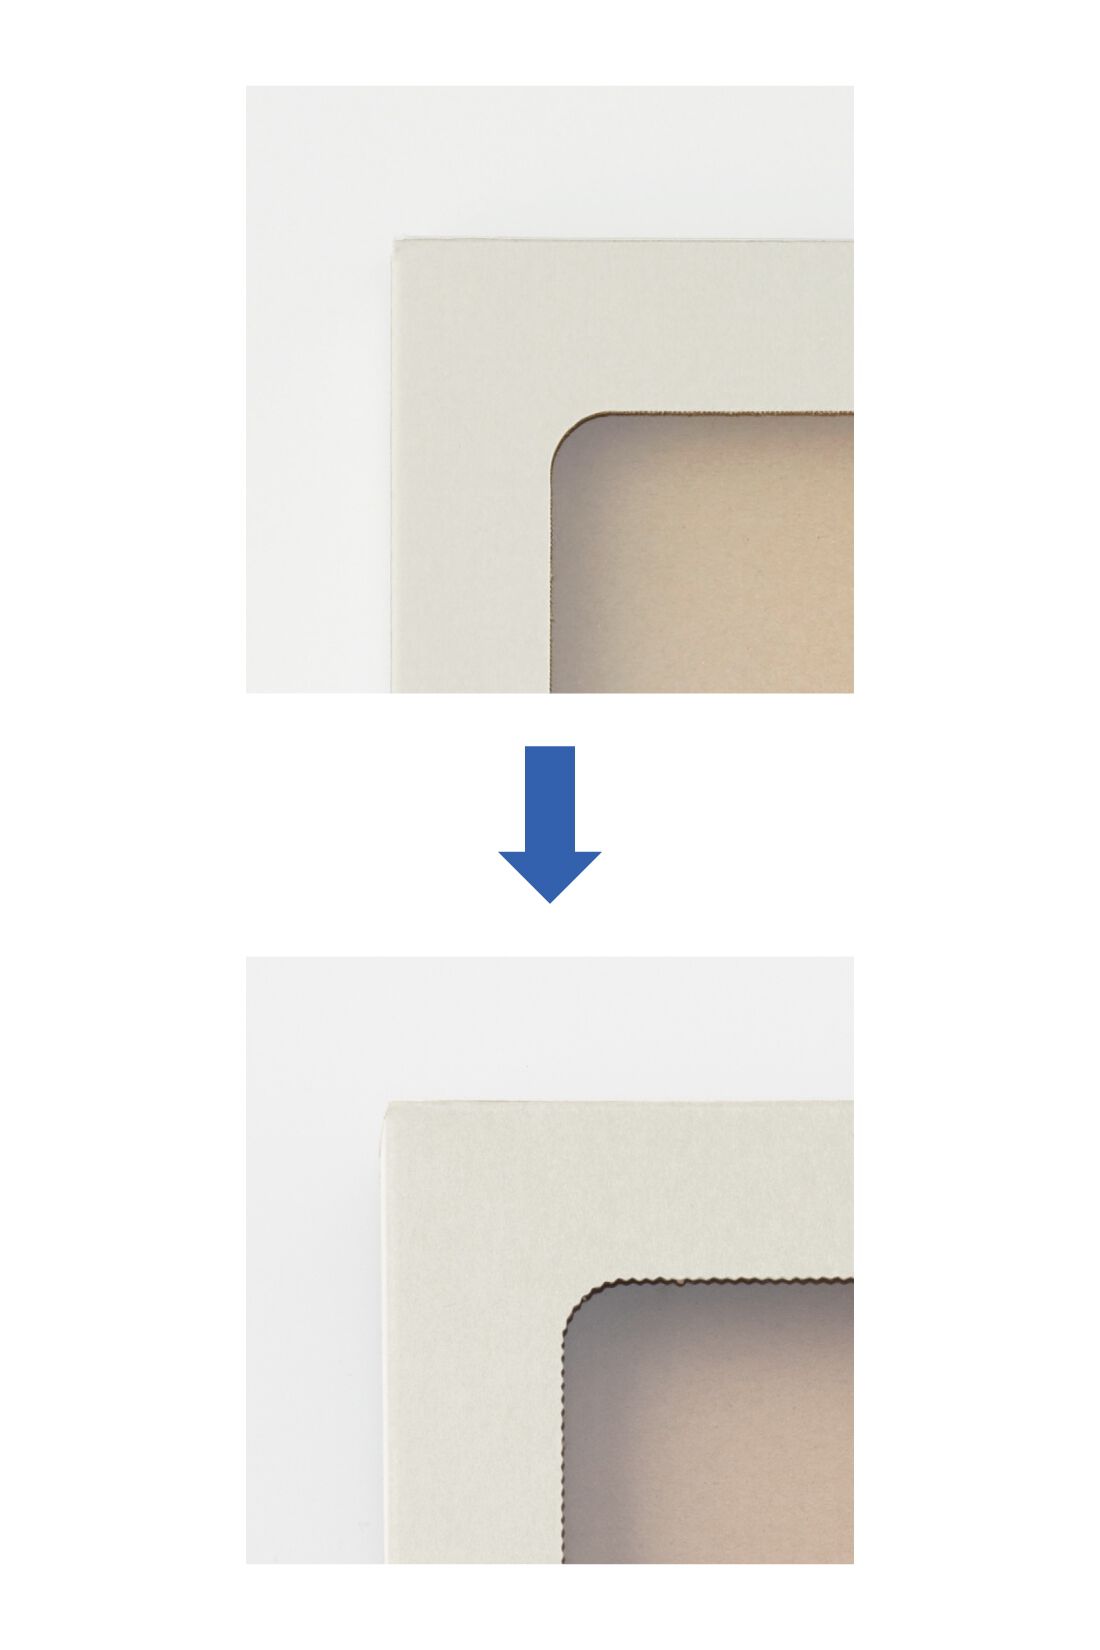 OSYAIRO|OSYAIRO  推しを飾って収納できるTフレーム〈アイボリー〉10個セット|枠のなみなみ具合はこんな感じ。 写真上：まっすぐカットされた枠　写真下：なみなみカットされた枠